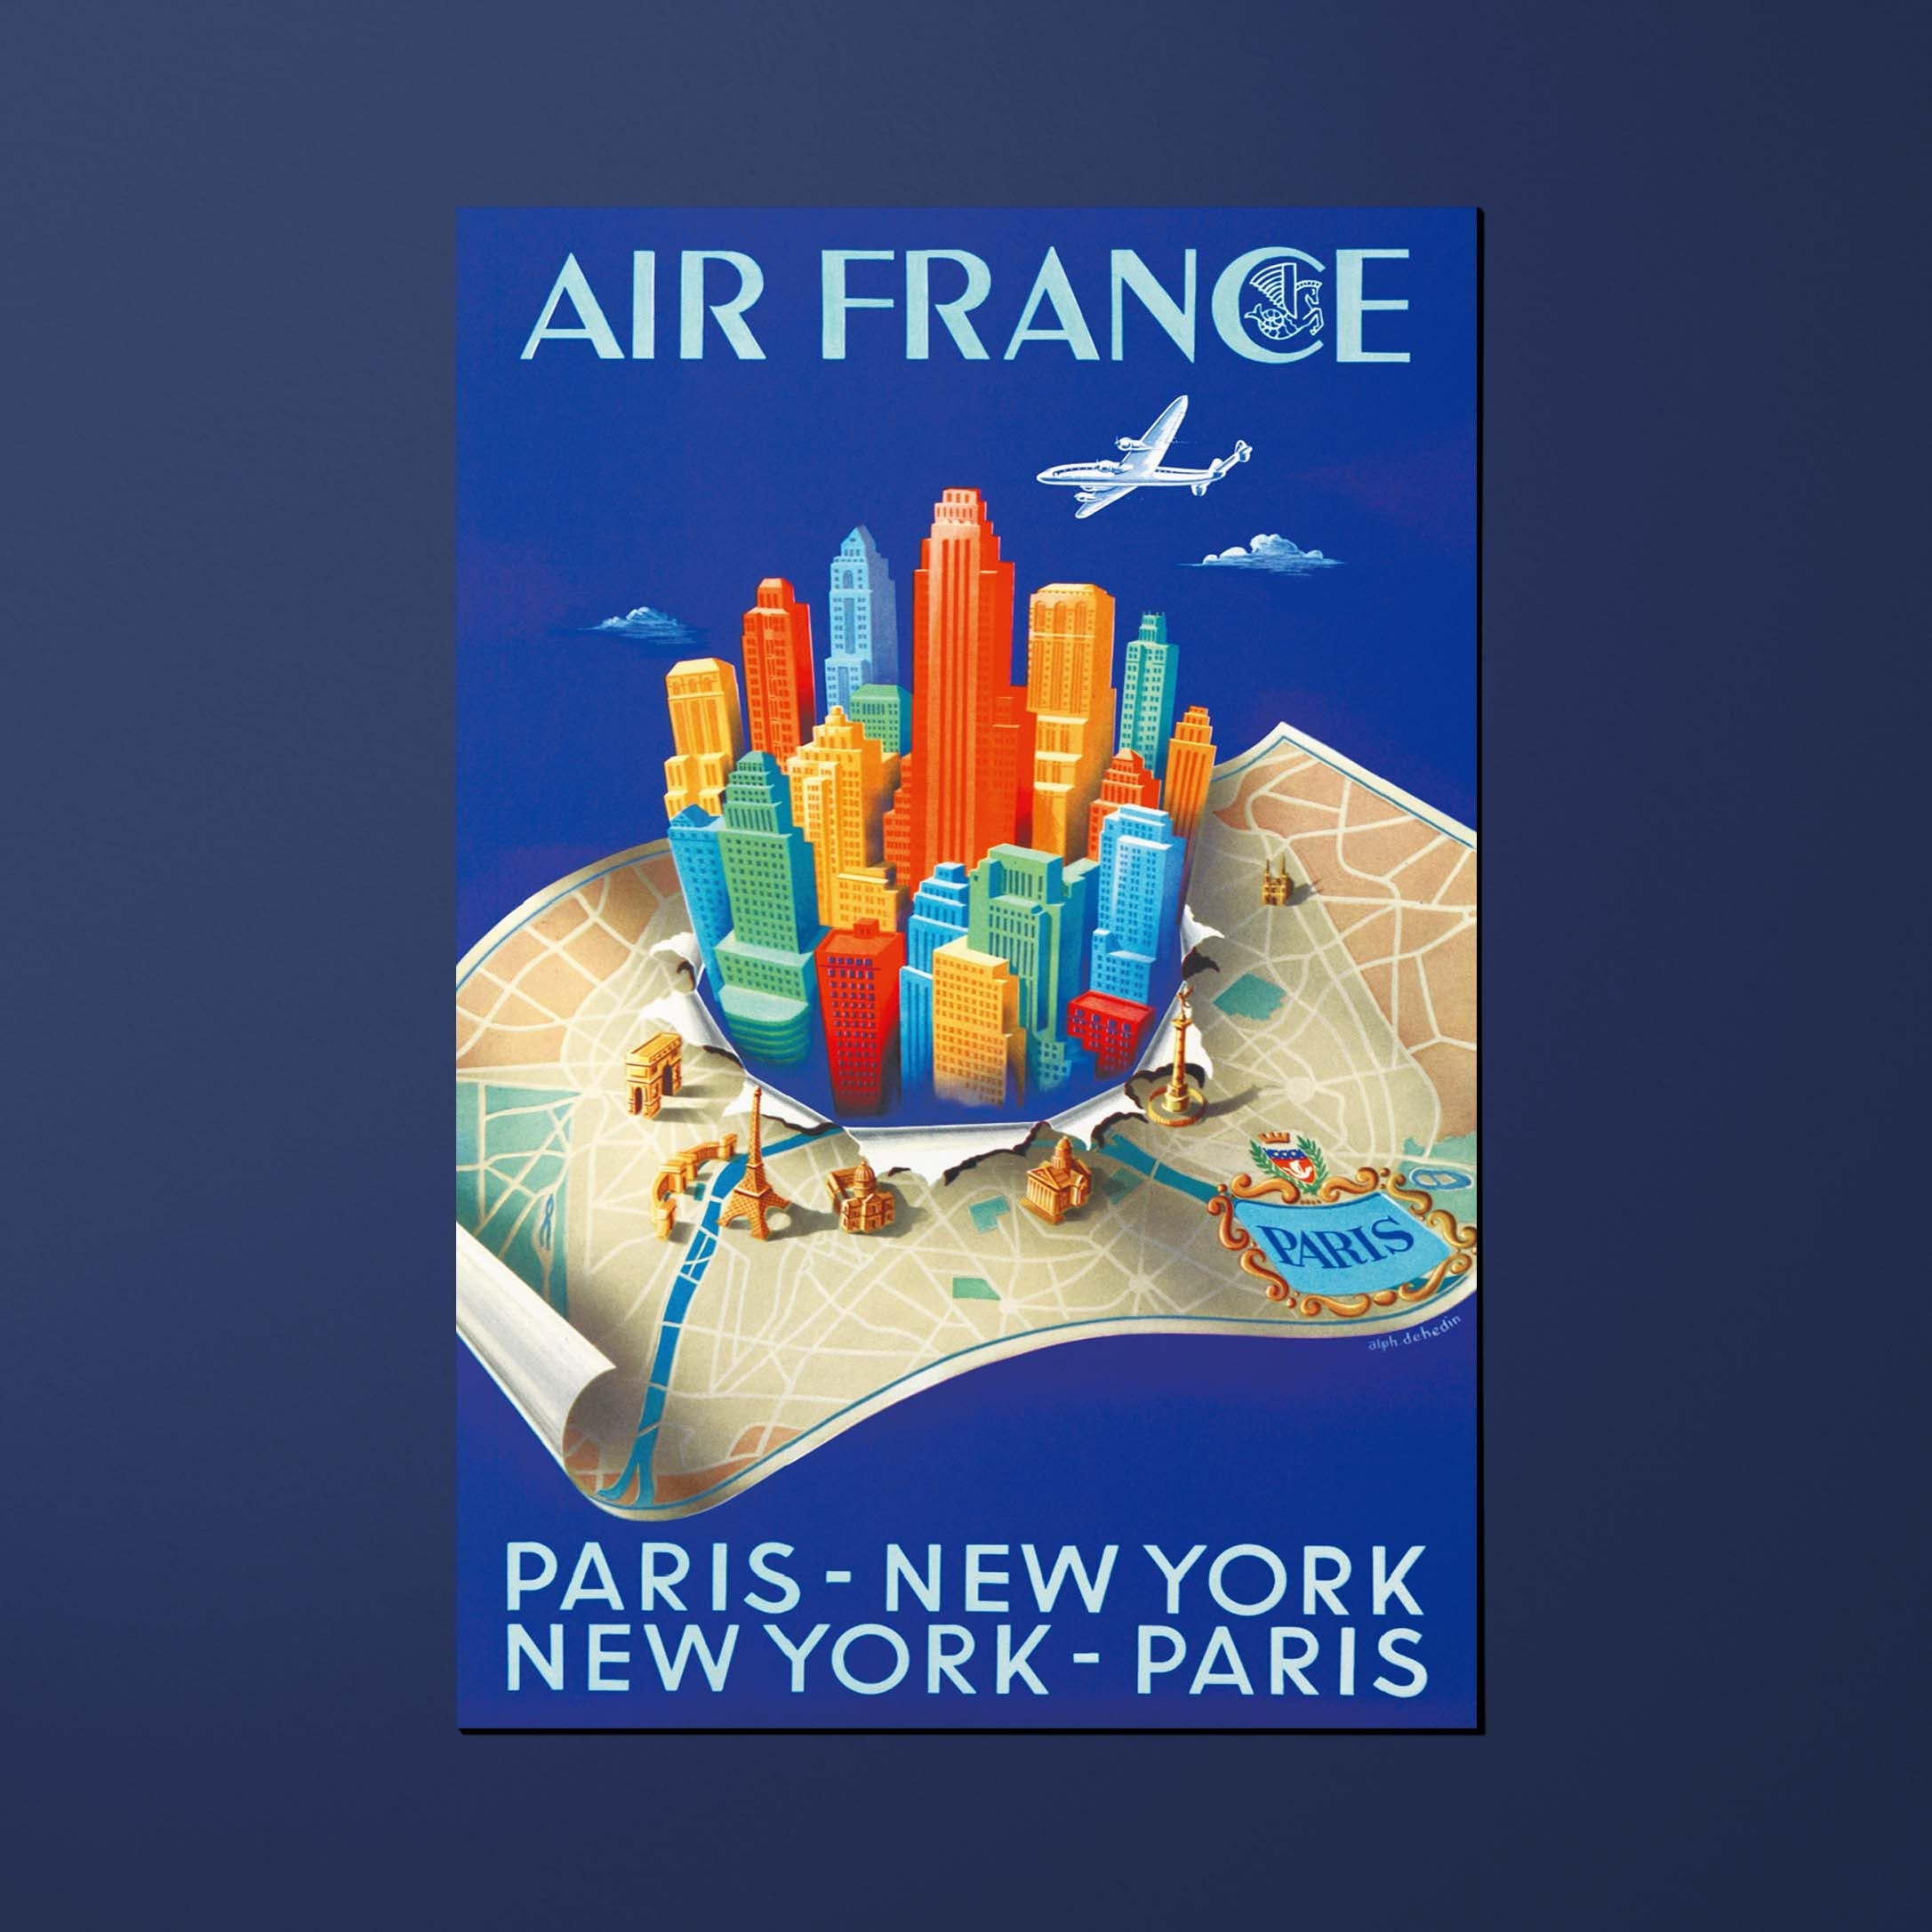 Postcard Air France Legend Paris - New York, building map